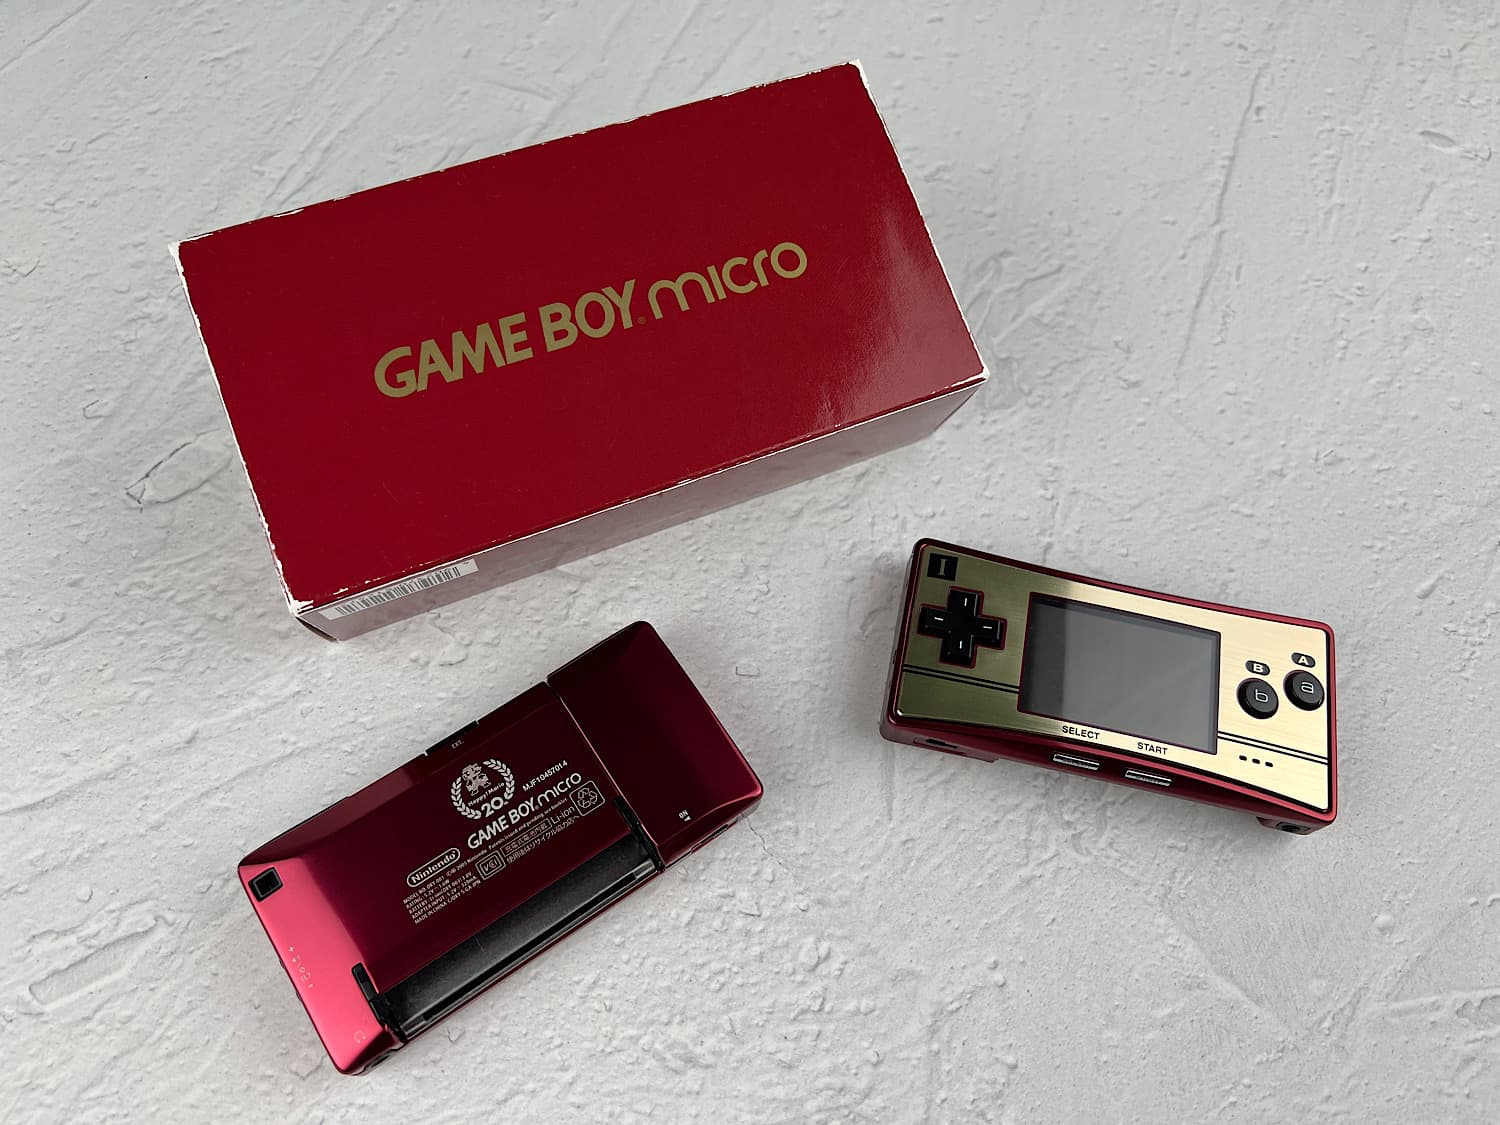 Nintendo Game Boy Micro